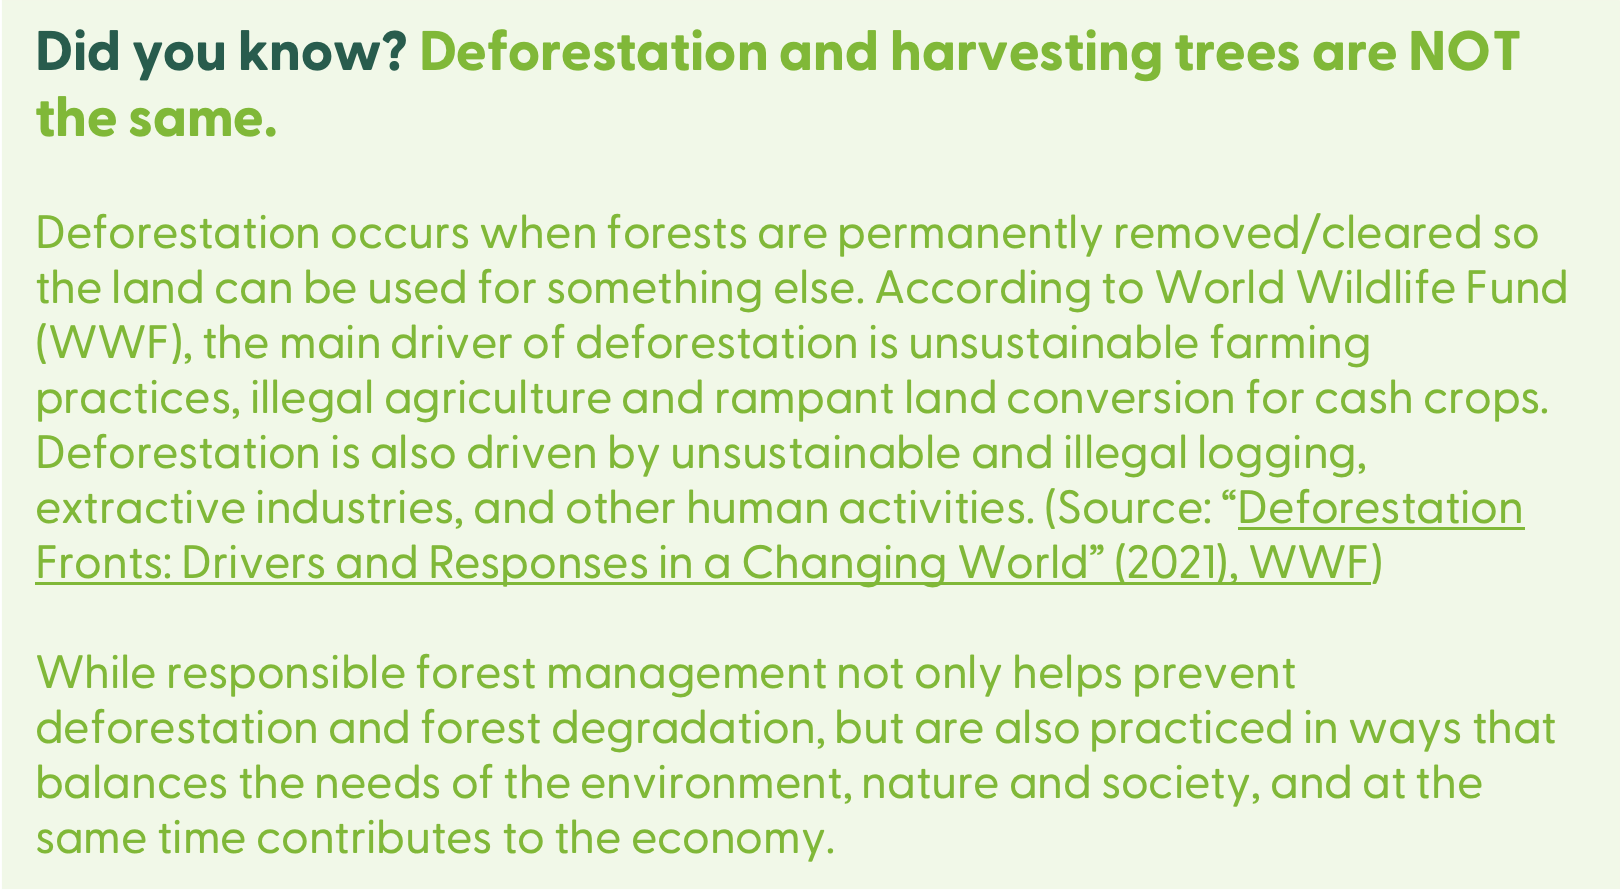 deforestation not same as harvesting